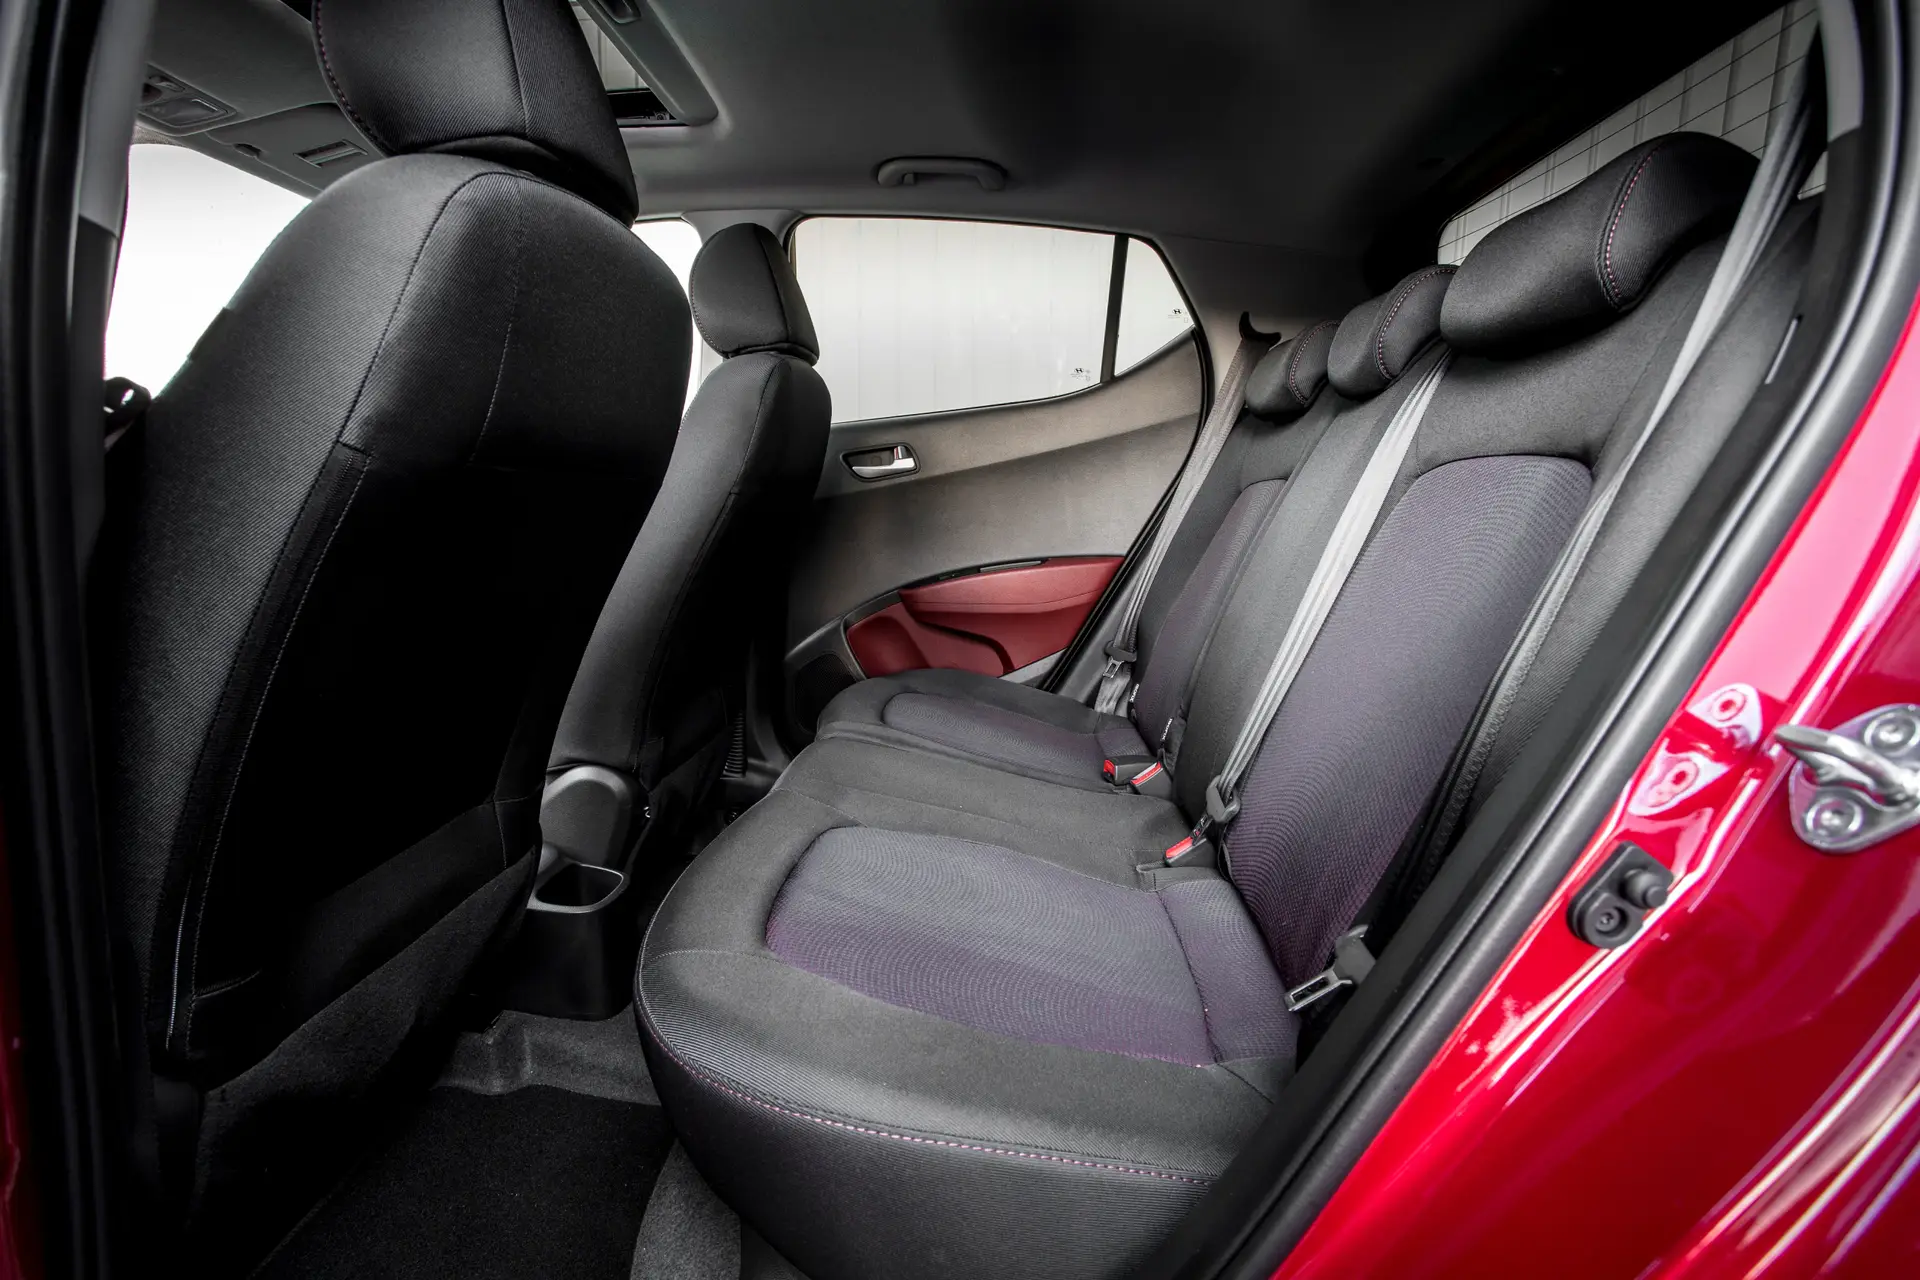 Hyundai i10 (2014-2020) Review: interior close up photo of the Hyundai i10 rear seats